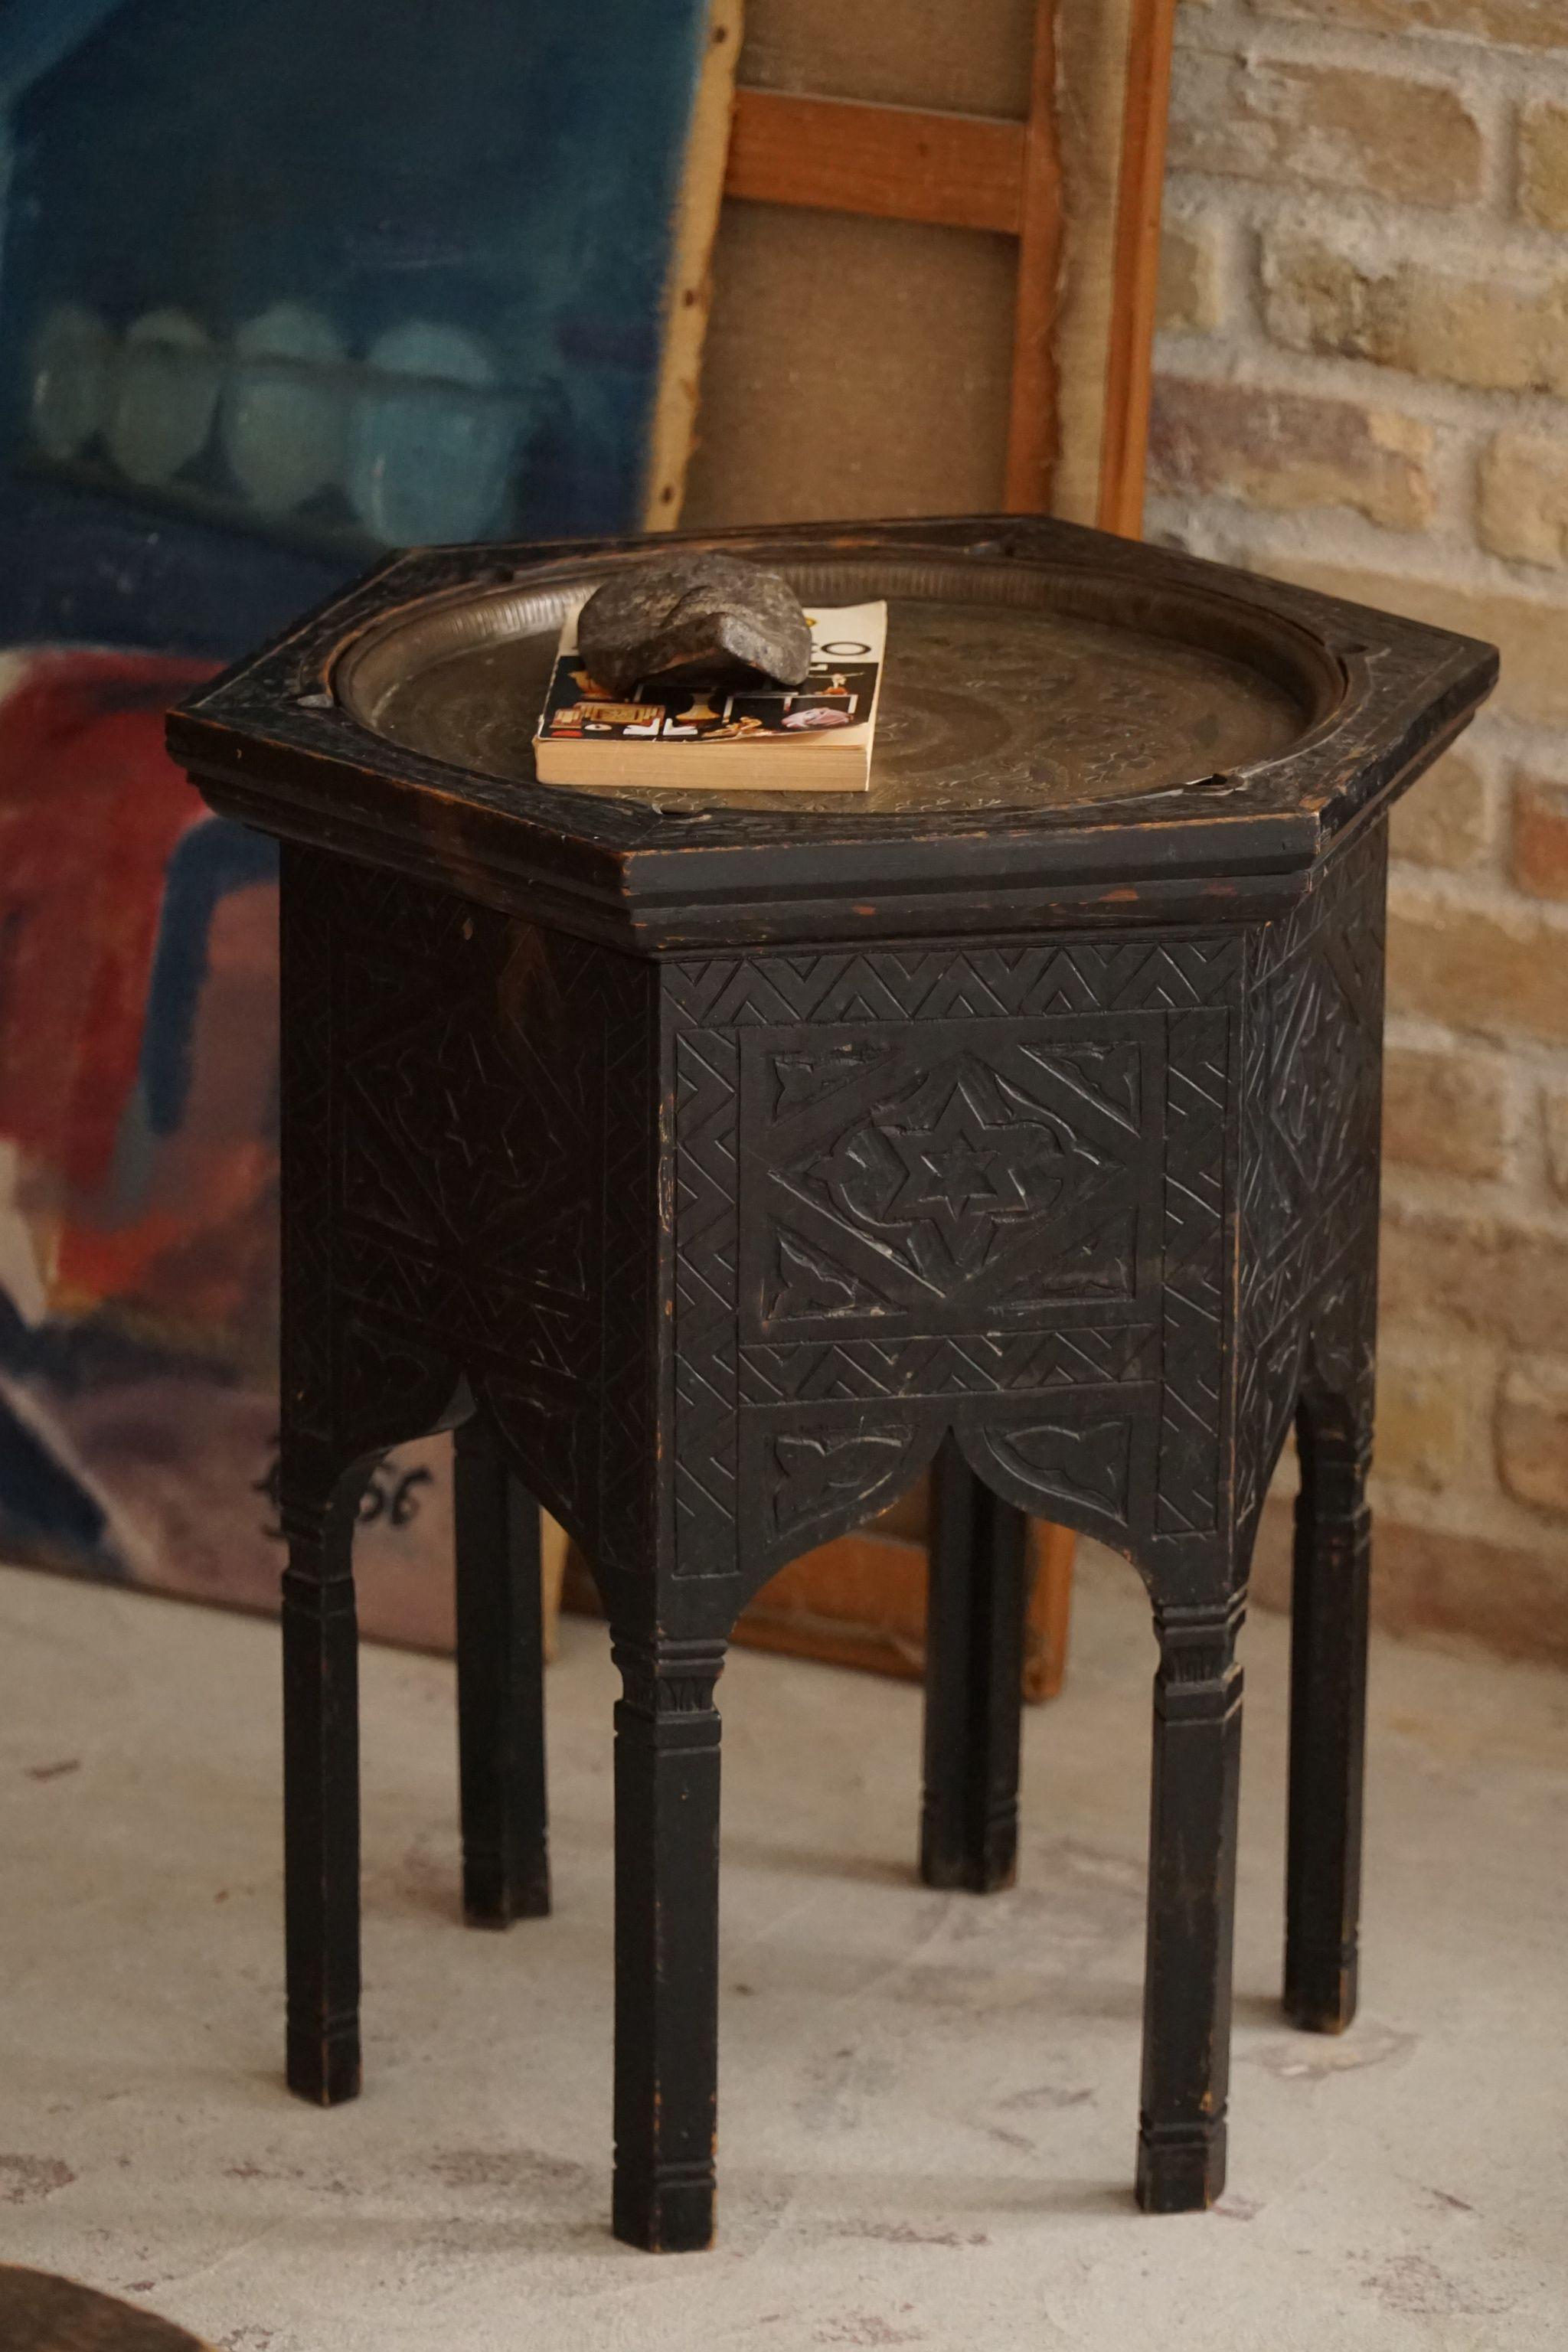 Table d'appoint décorative en forme d'hexagone avec 6 pieds. Fabriqué à la campagne par un ébéniste inconnu en Inde. Fabriqué à la fin du 19e siècle. Un joli objet vintage wabi sabi, bien adapté aux intérieurs modernes.

